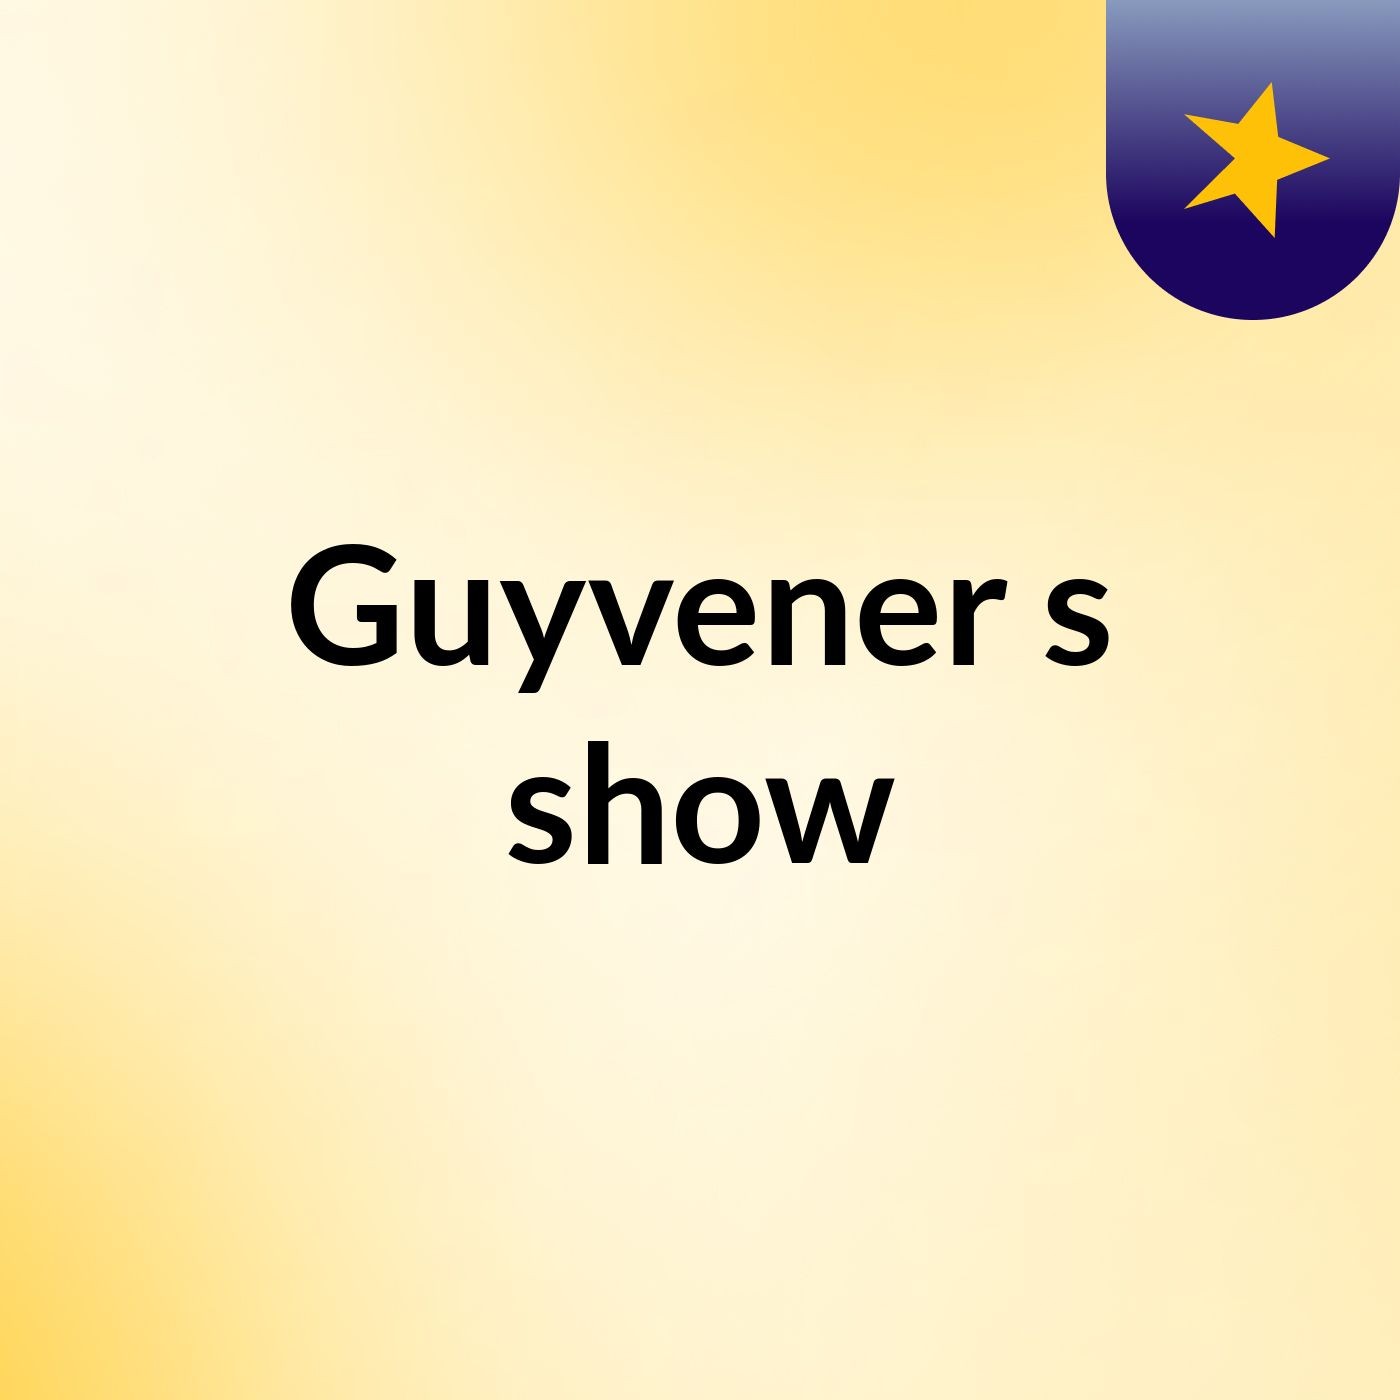 Guyvener's show